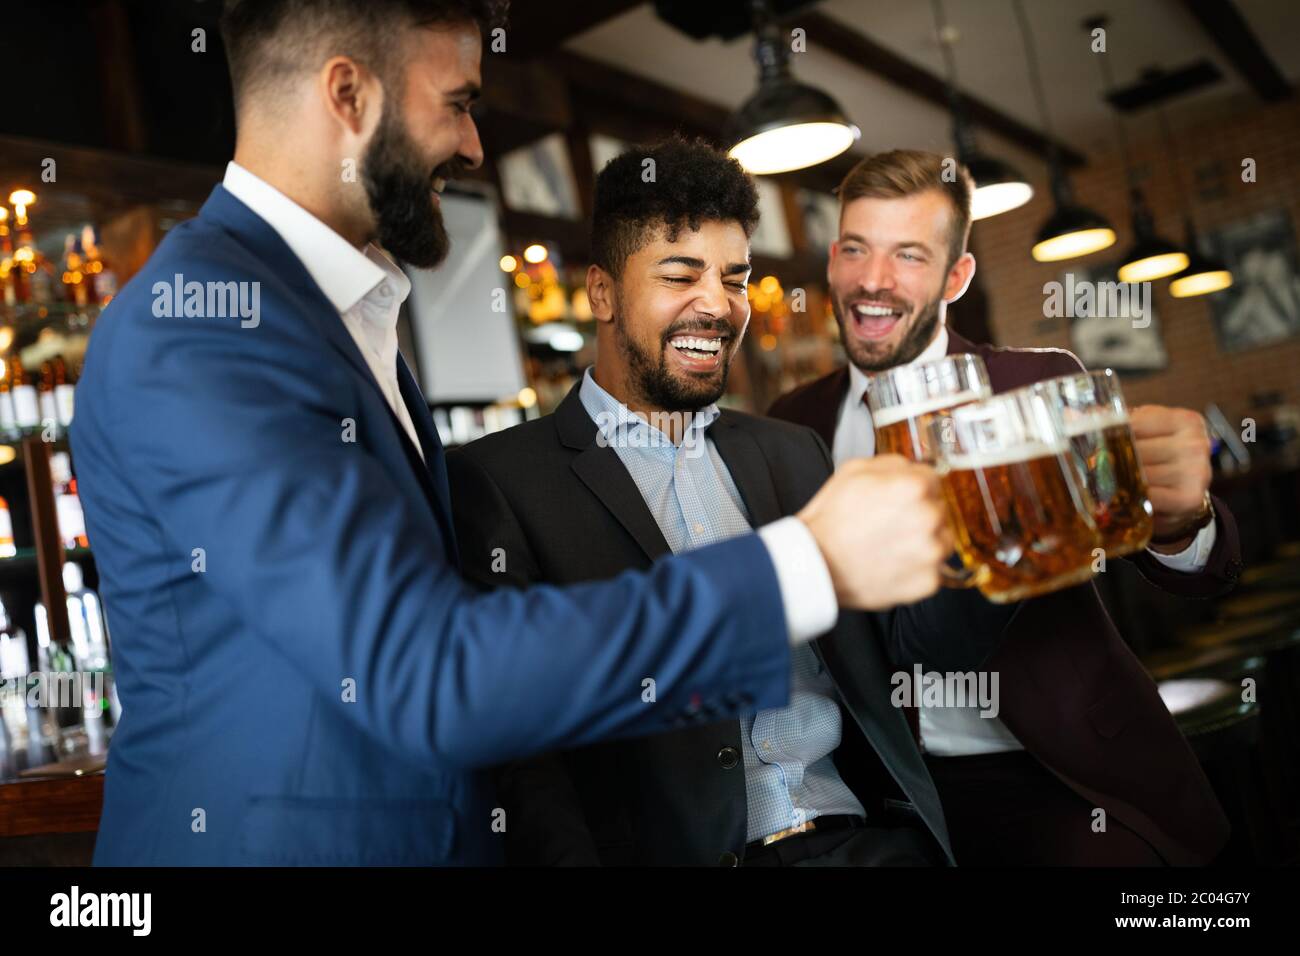 Persone, uomini, tempo libero, amicizia e celebrazione concetto. Amici maschi felici che bevono birra al pub Foto Stock